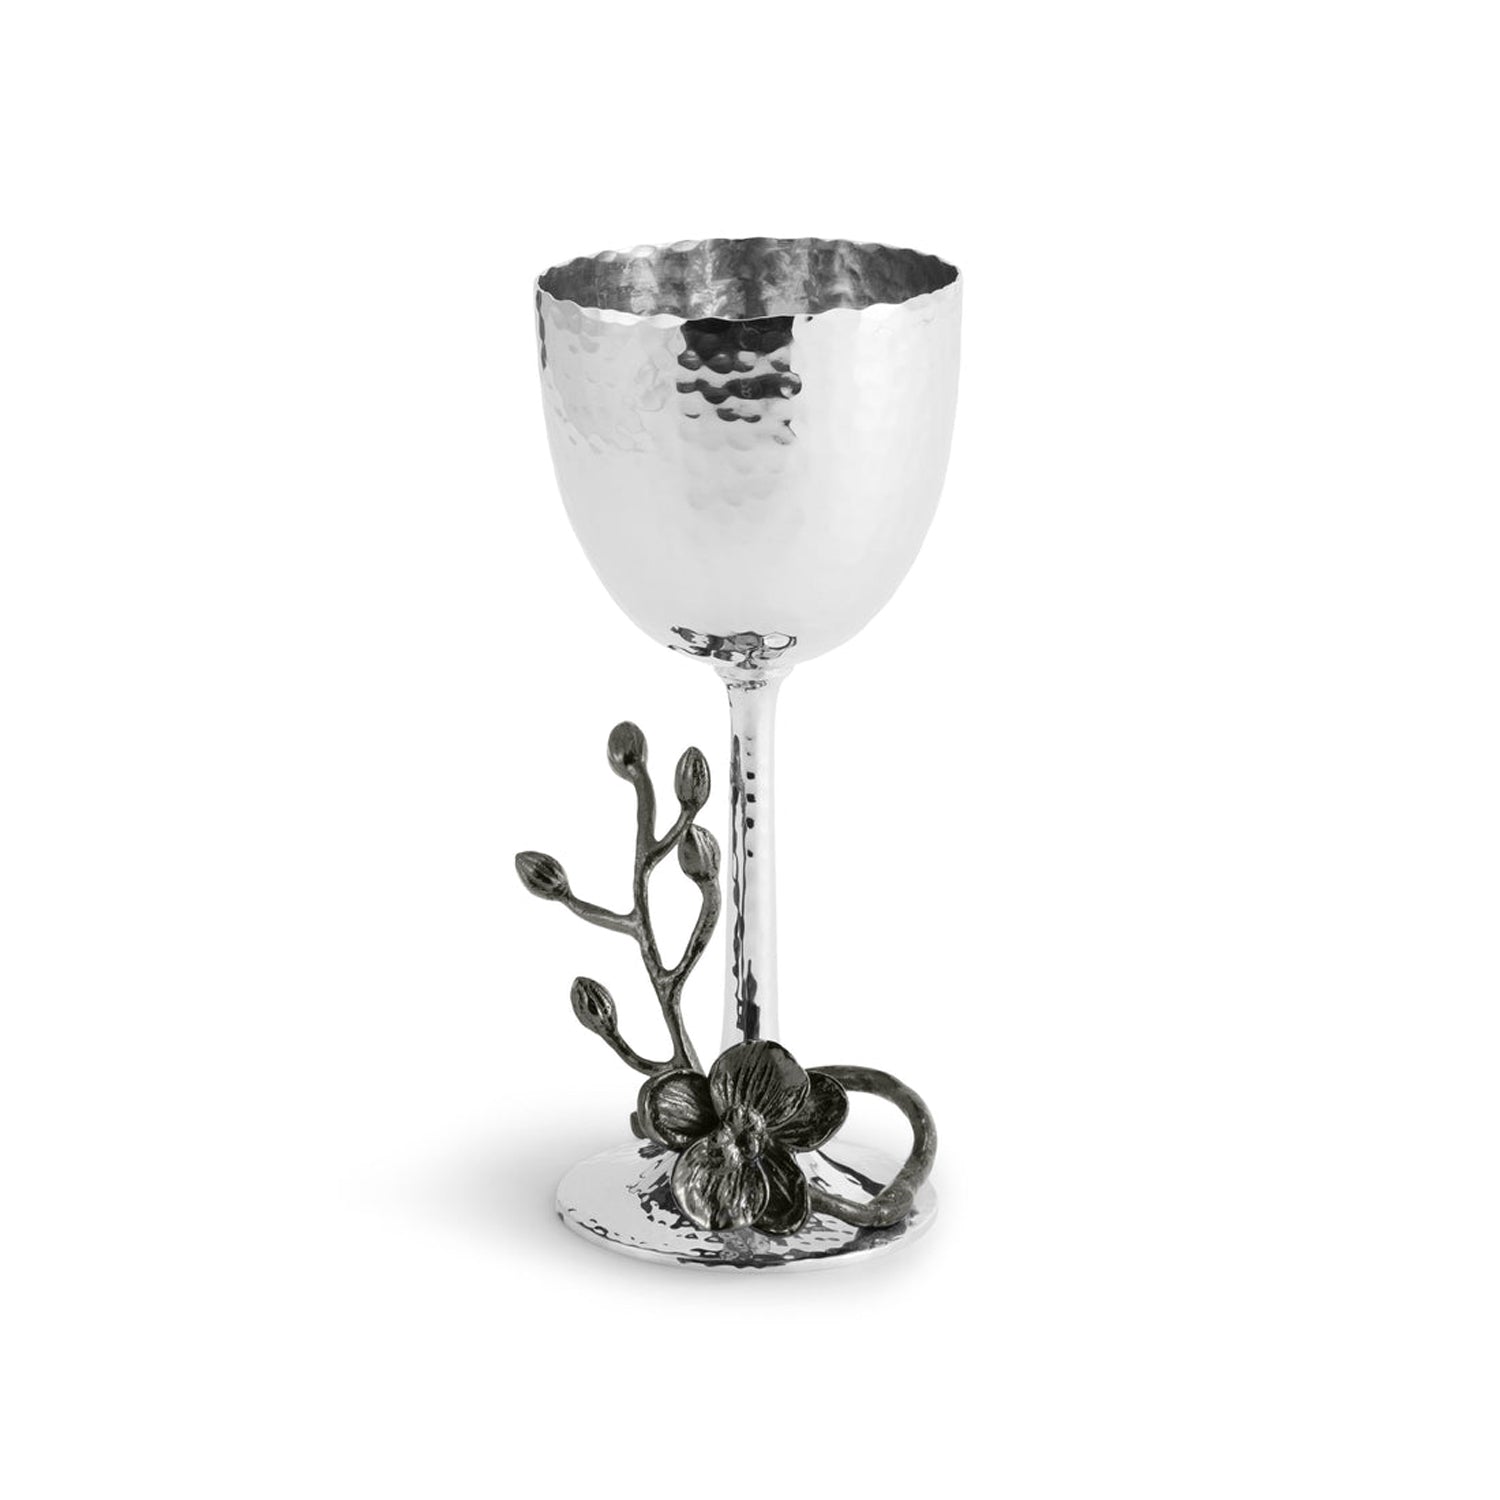 Michael Aram - Black Orchid Kiddush Cup, 3" diameter x 6.5" tall